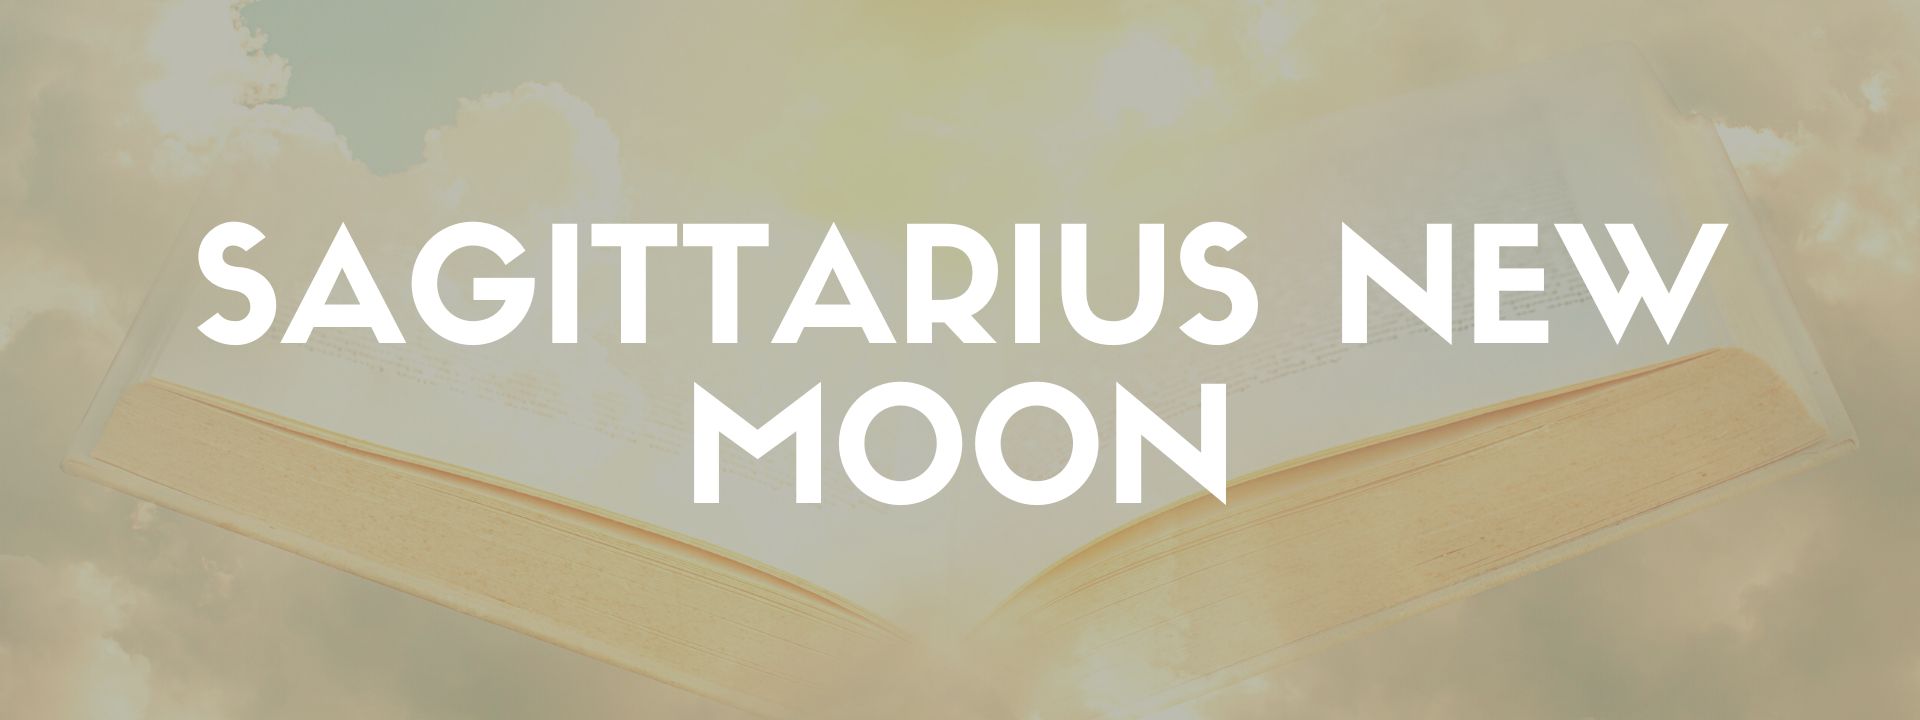 Sagittarius New Moon 2022 - The Dark Pixie Astrology